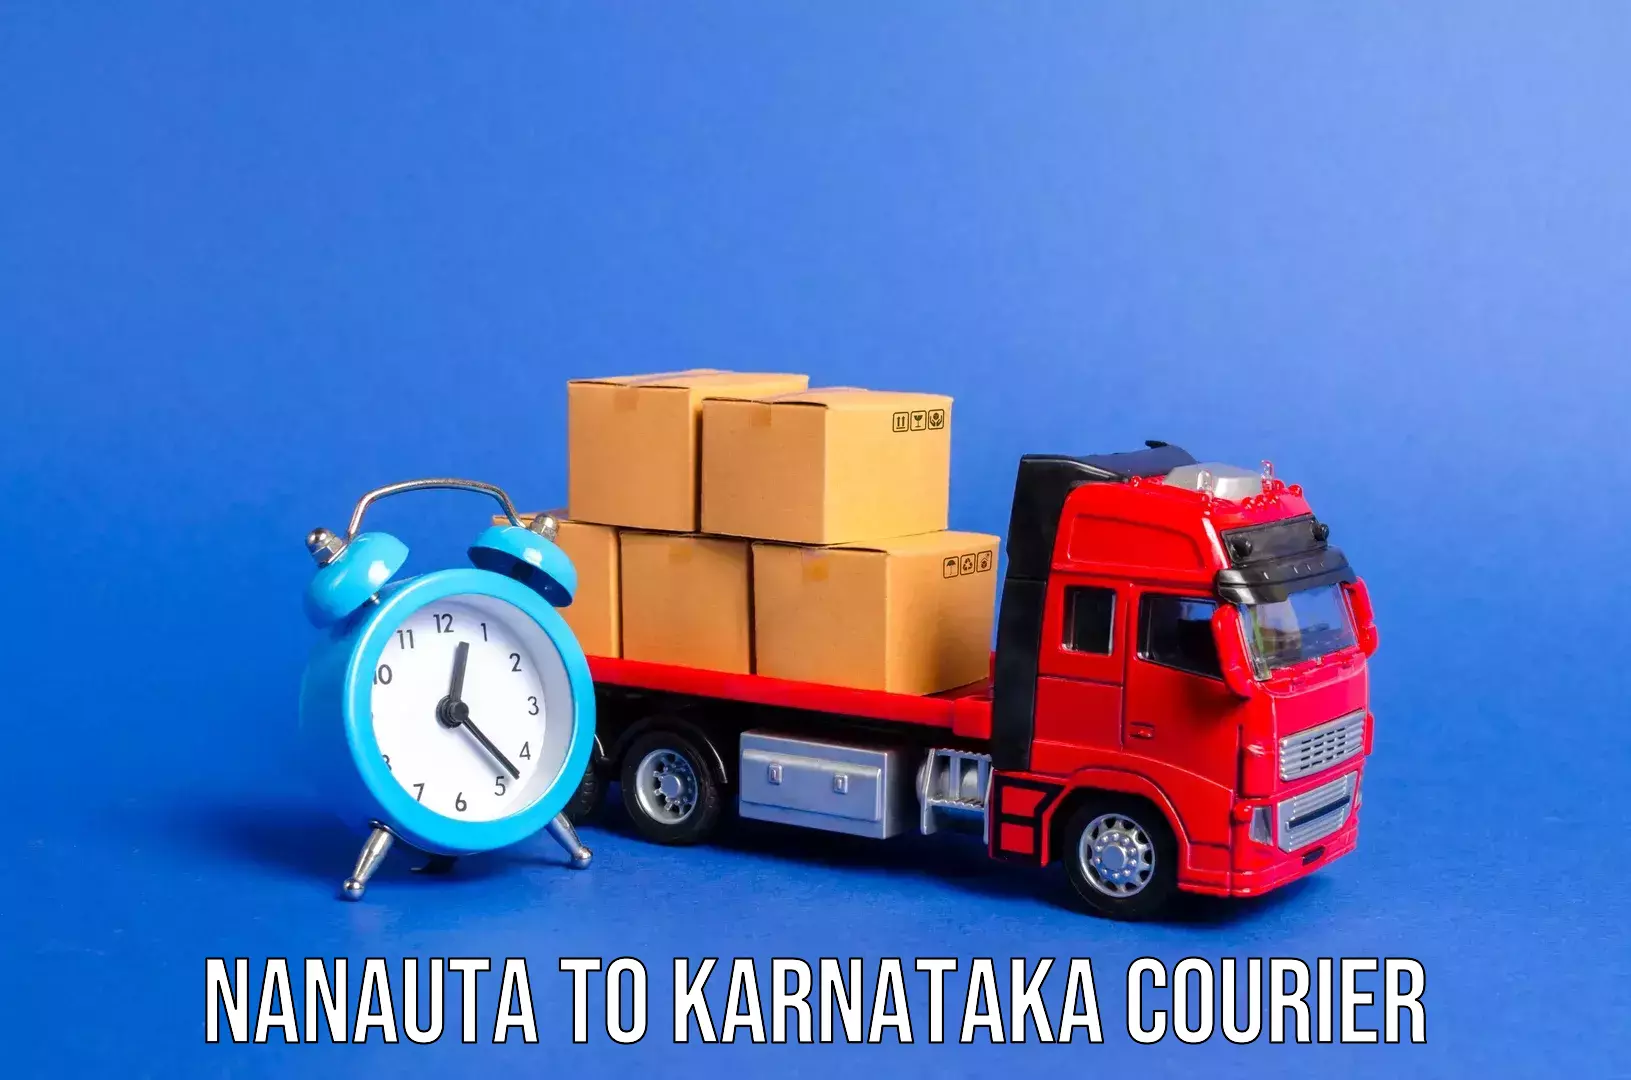 Baggage transport management Nanauta to Koppa